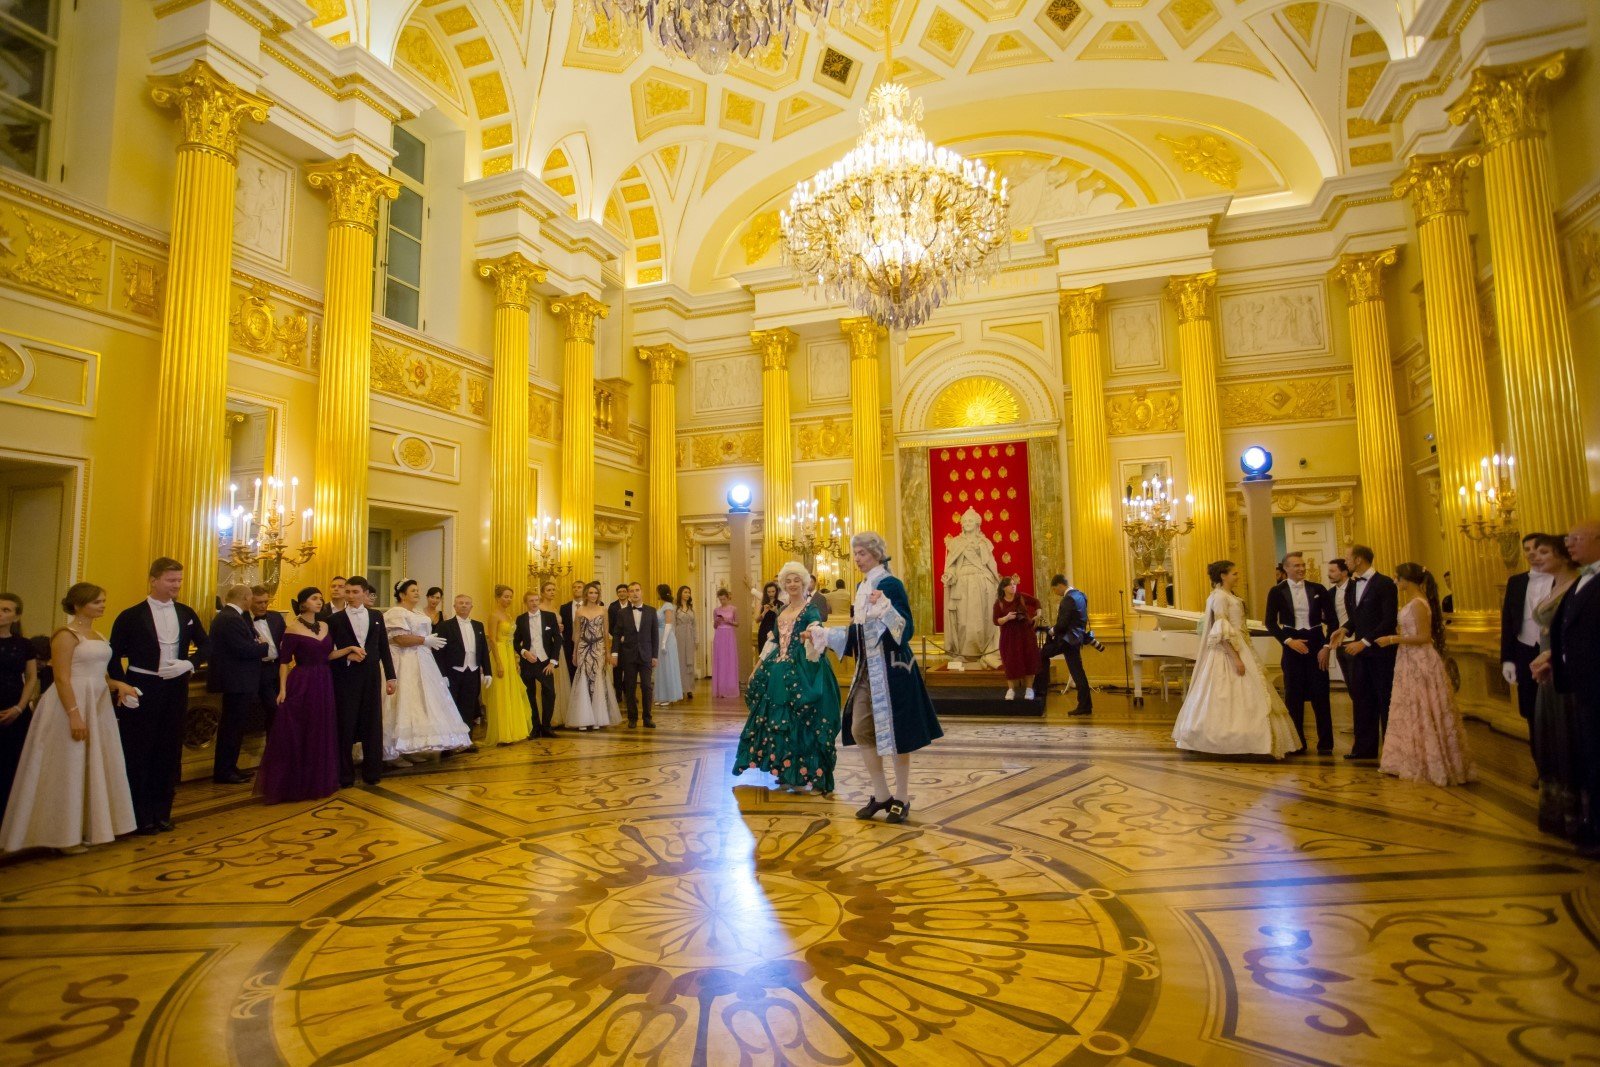 Фото царицыно дворец внутри